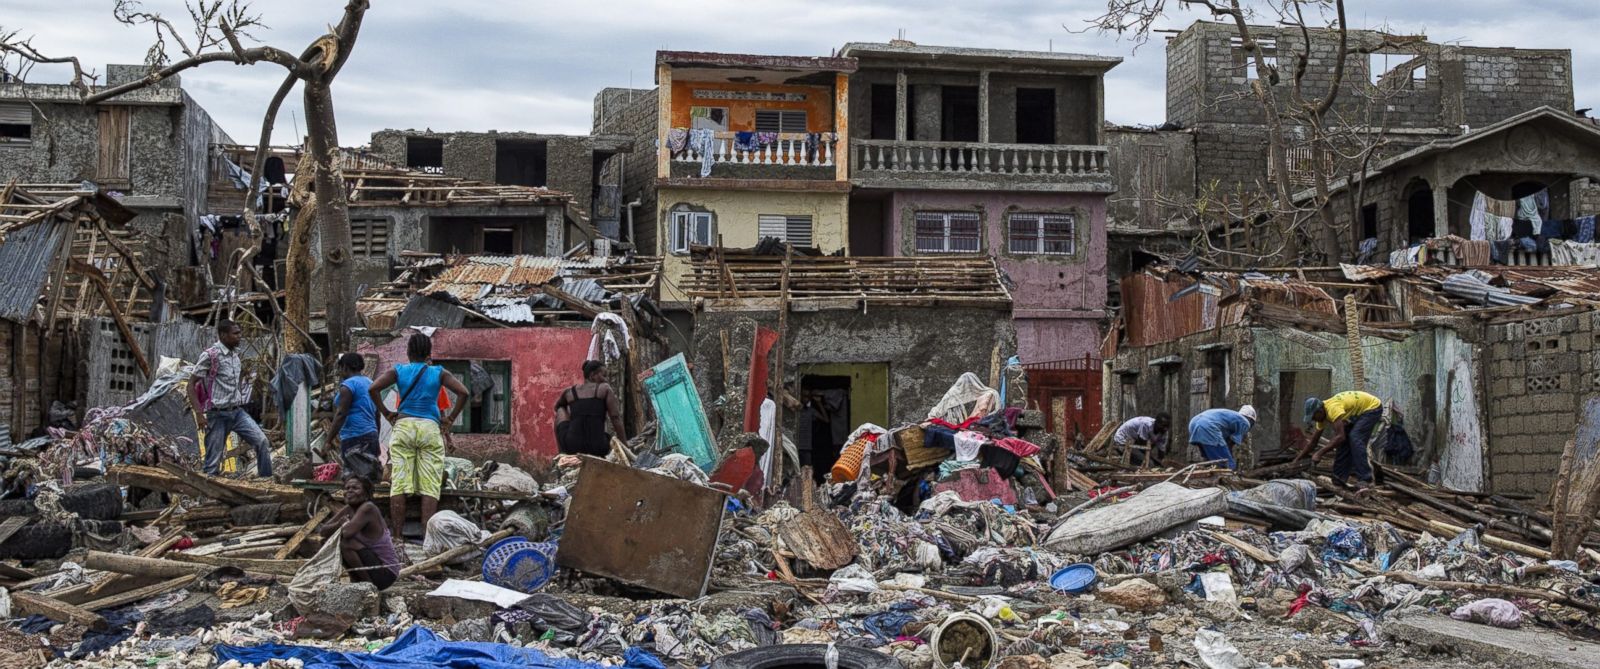 Následky přírodní katastrofy na Haiti